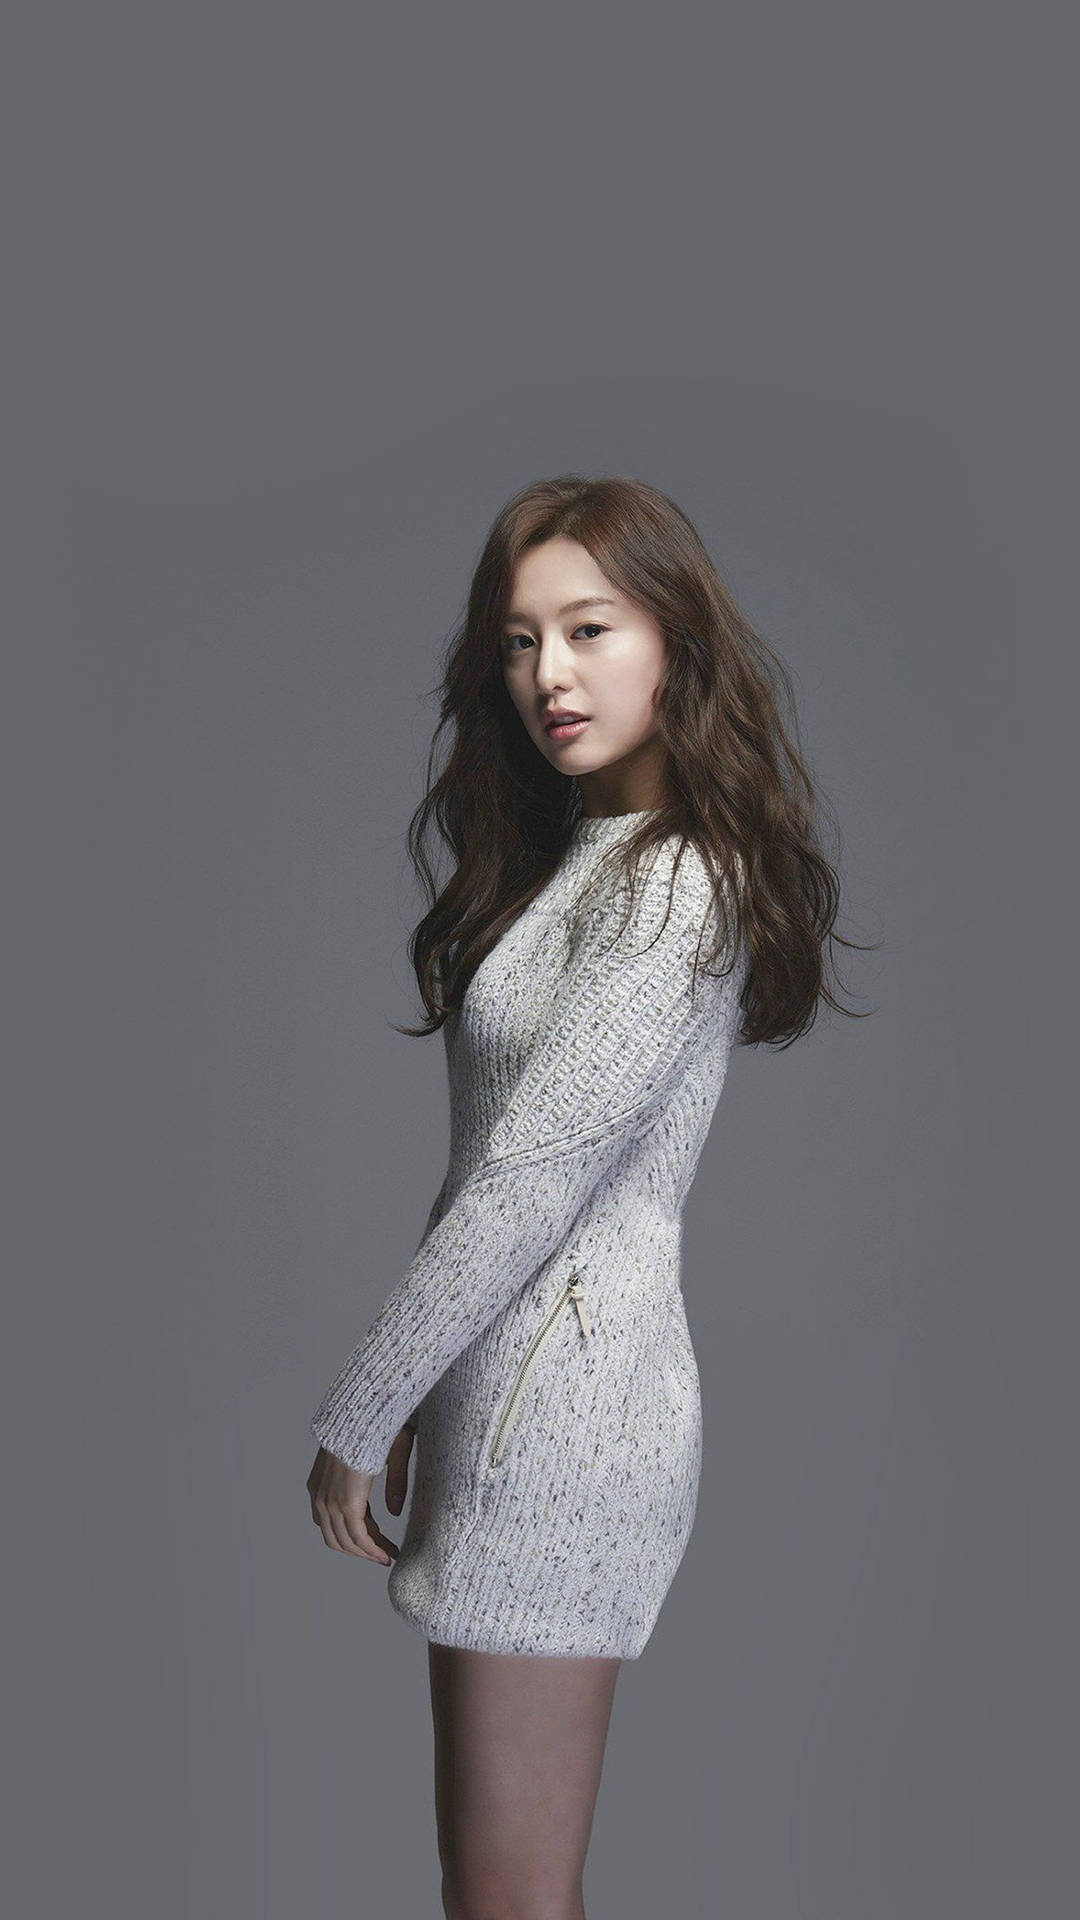 Kpop Actress Kim Ji-won